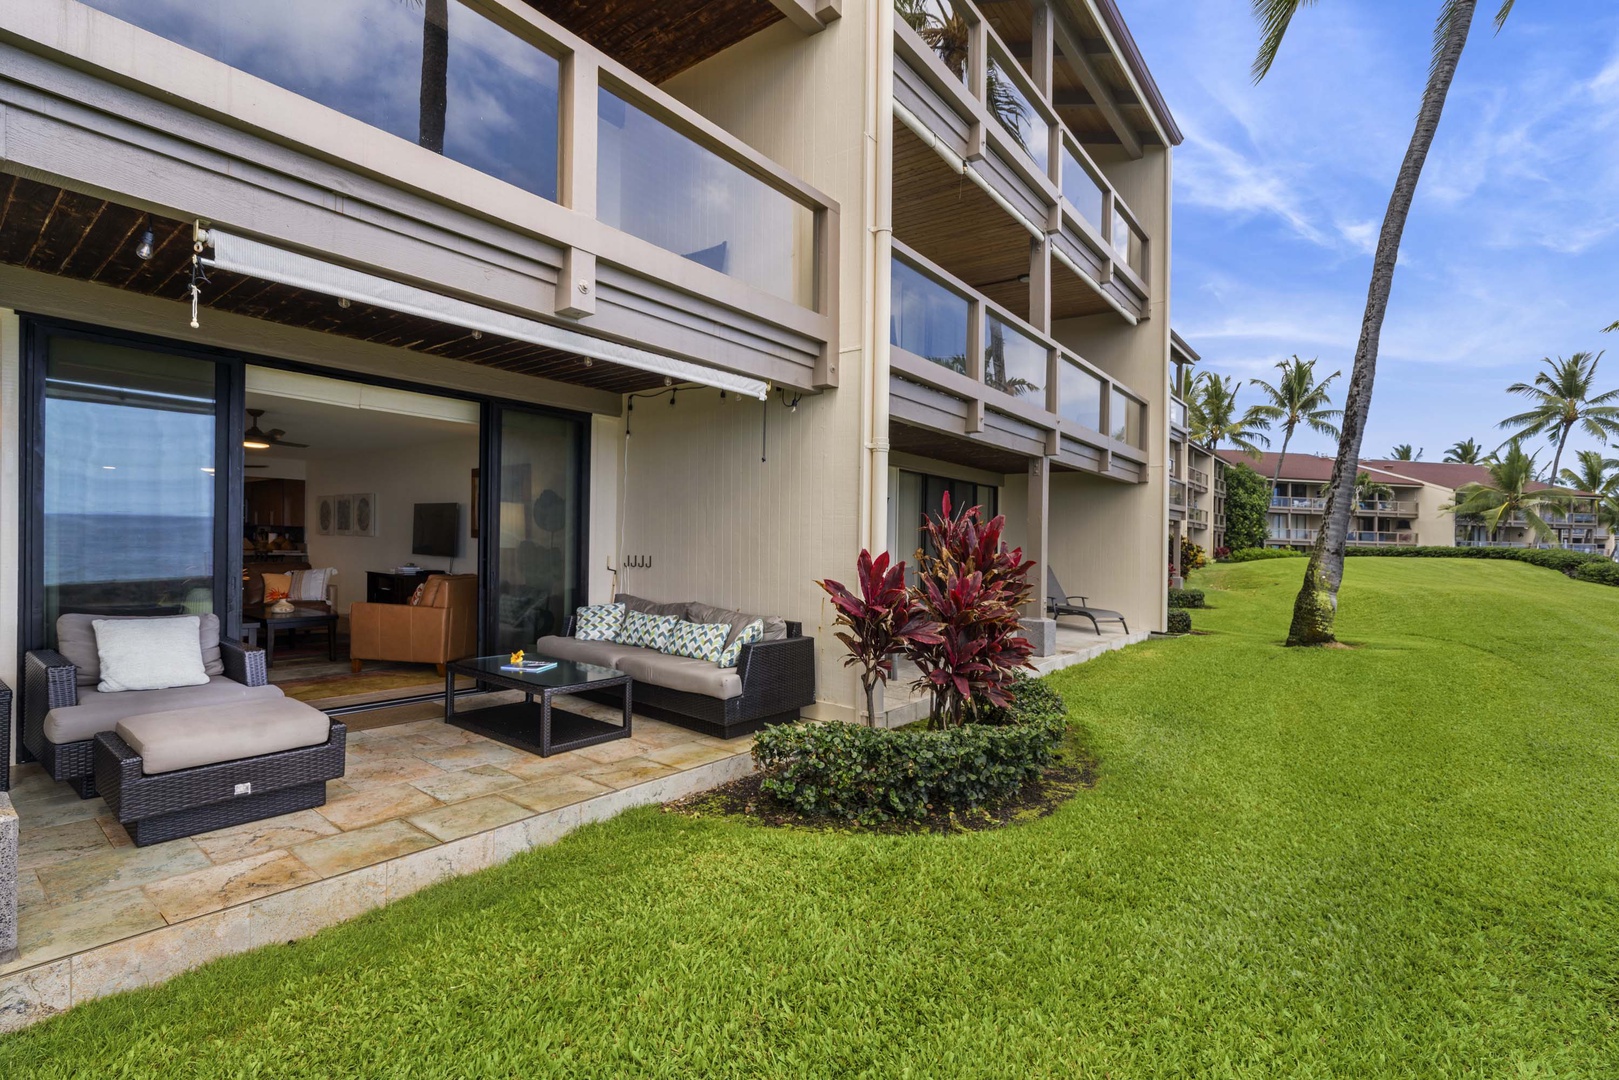 Kailua Kona Vacation Rentals, Keauhou Kona Surf & Racquet 2101 - Lanai's front facade.